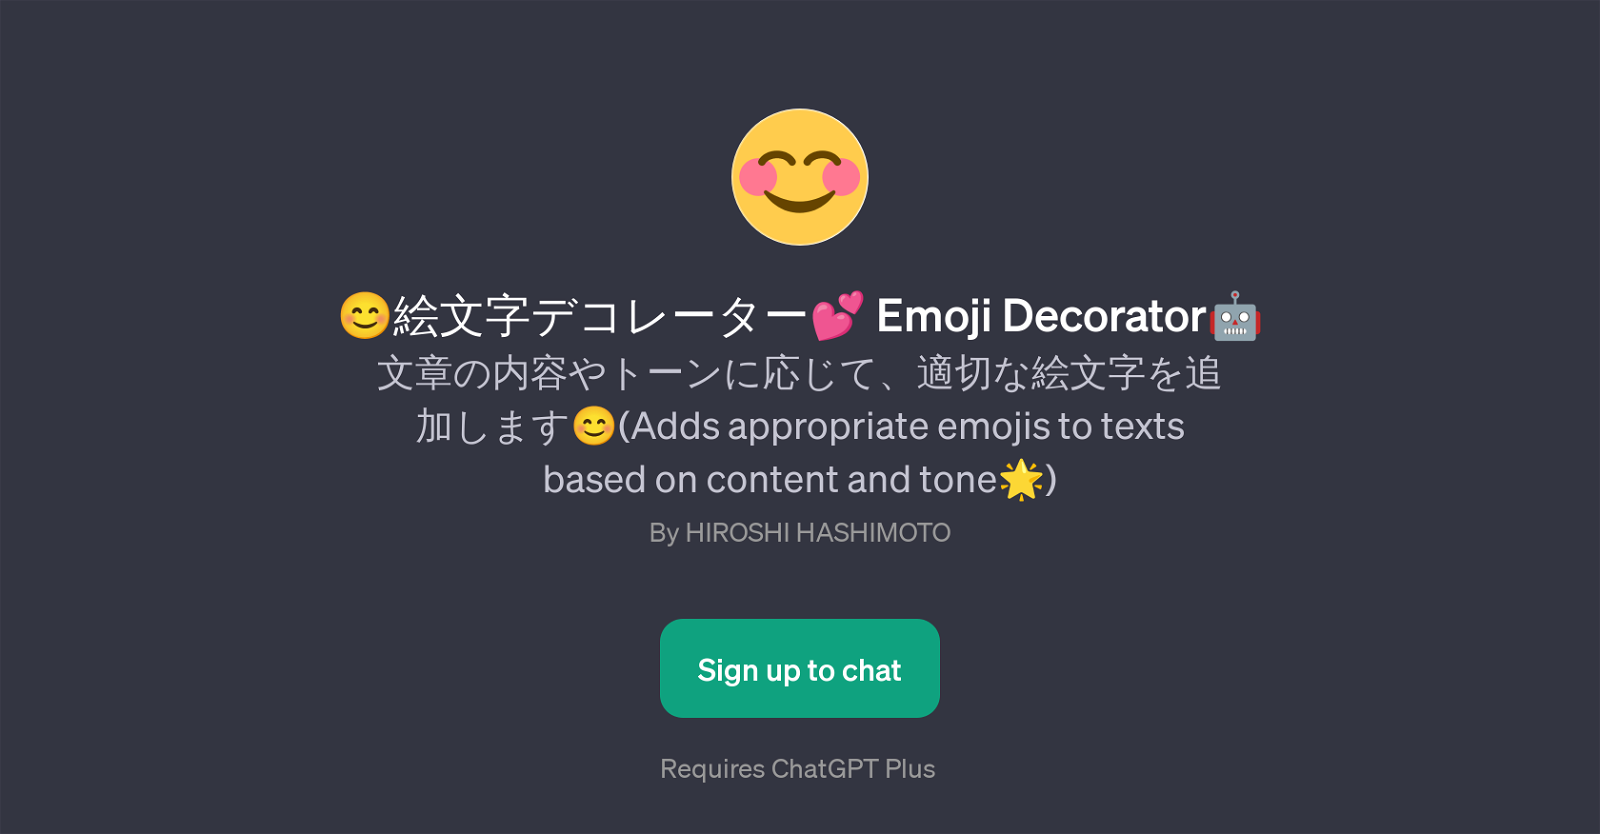 Emoji Decorator website